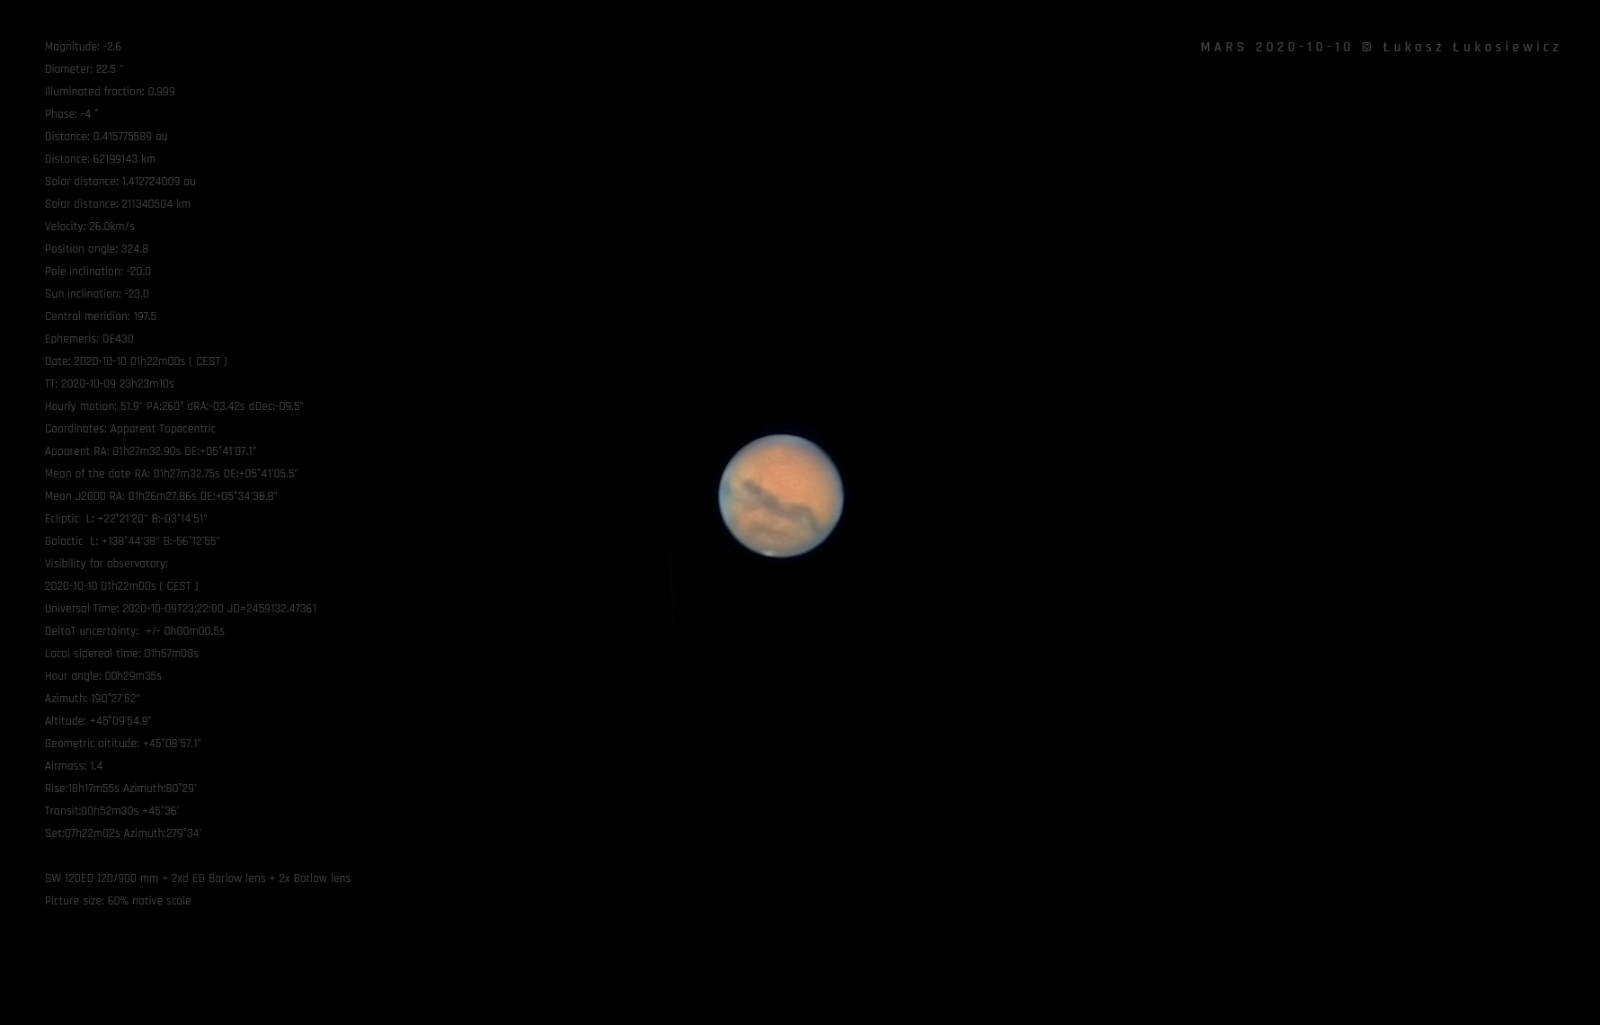 MARS-2020-10-10D.png